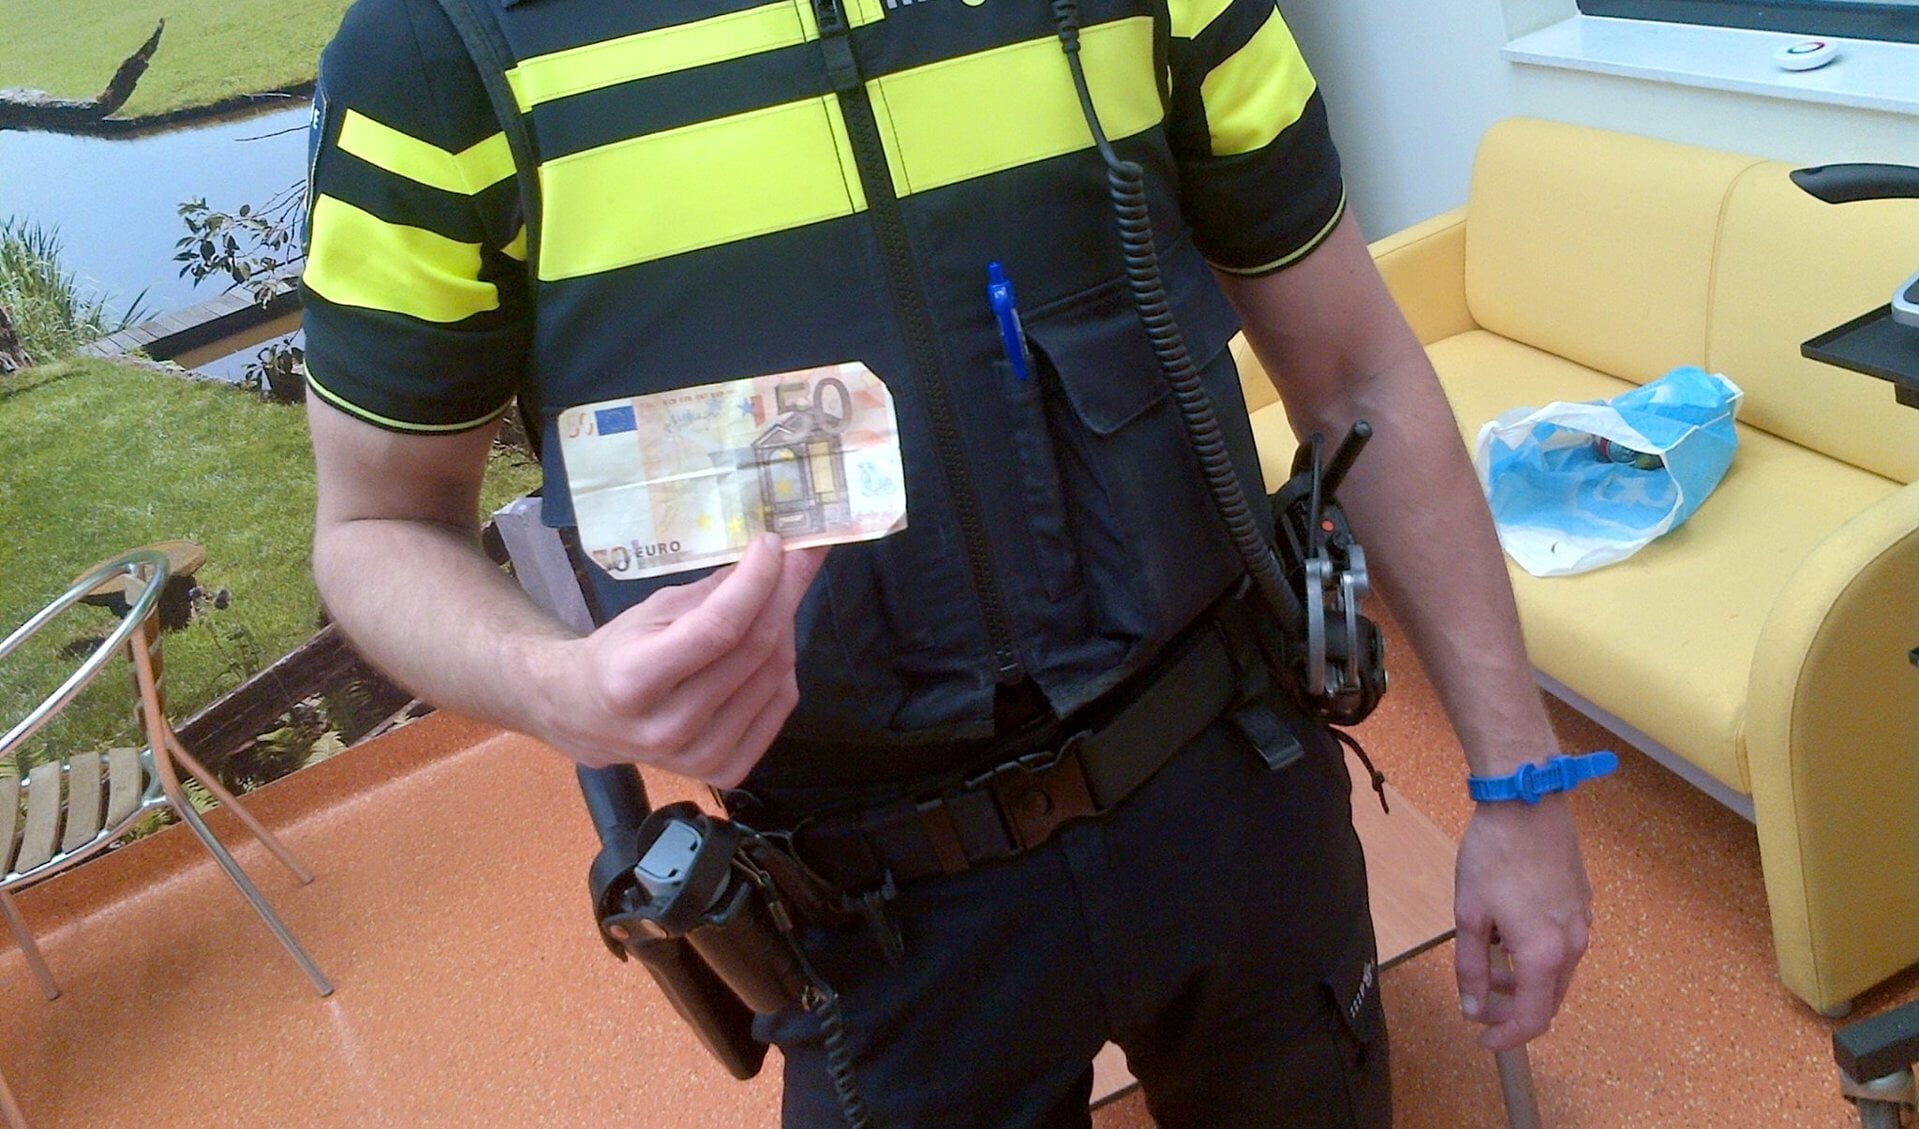 De politie nam zelf de proef op de som en 'betaalde' met vals geld. Foto: Politie